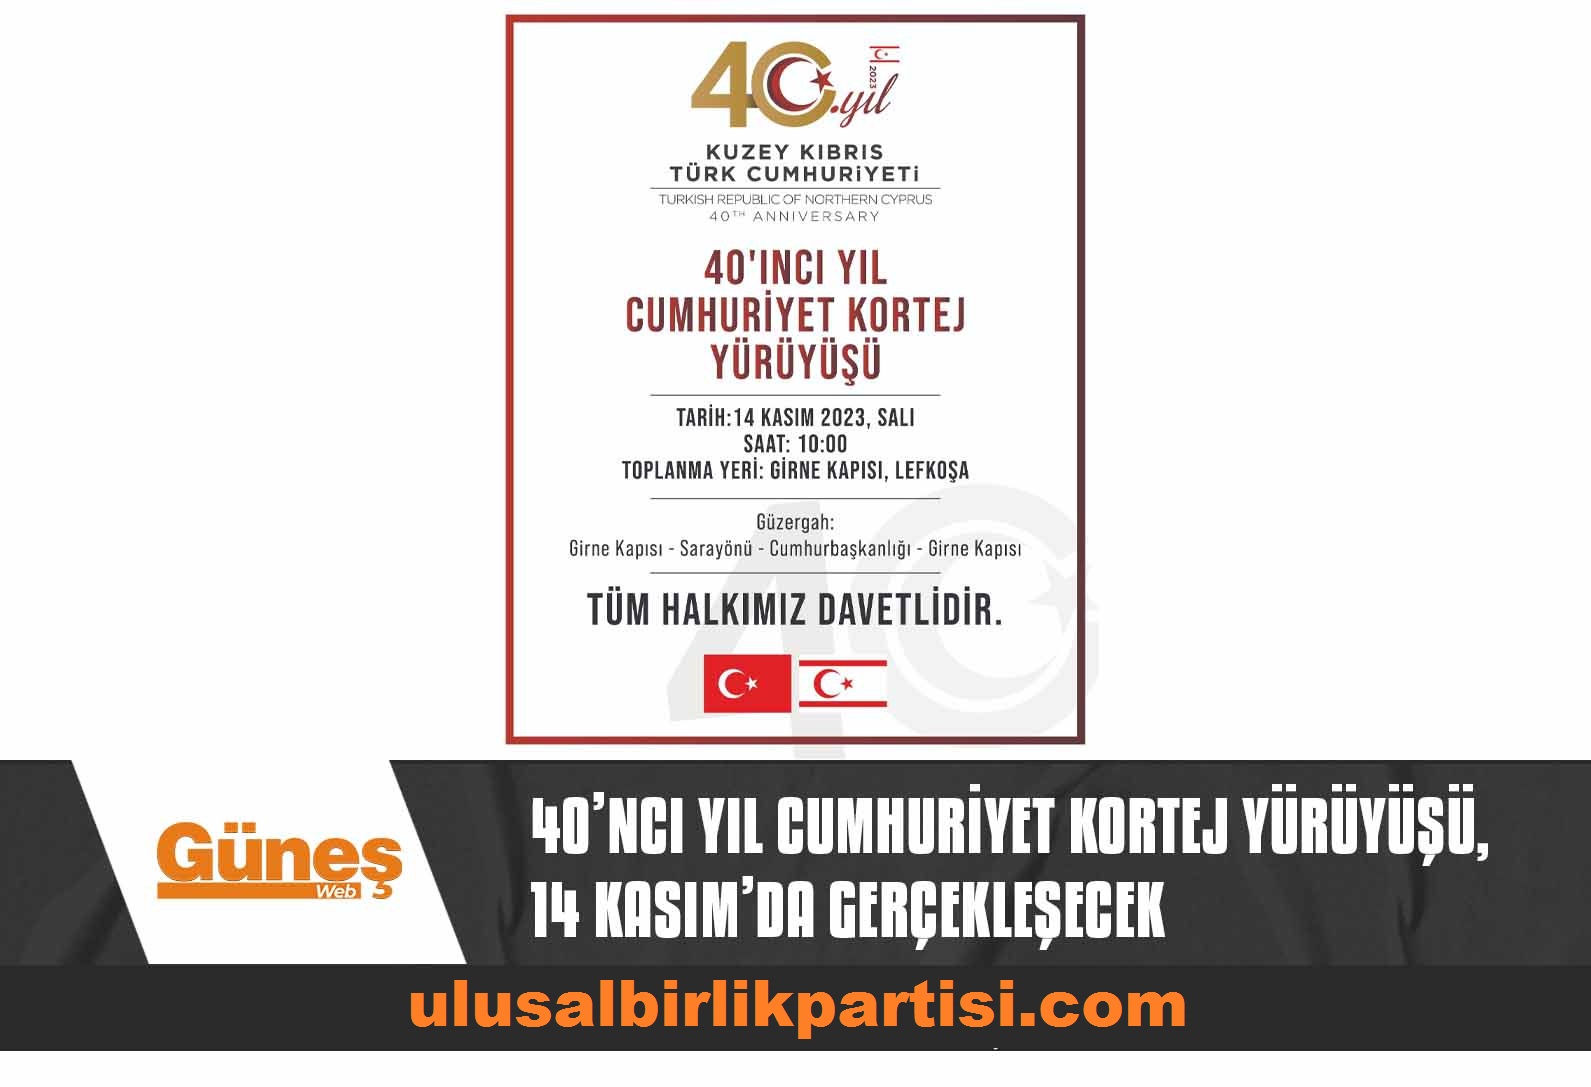 You are currently viewing 40’ncı yıl Cumhuriyet Kortej Yürüyüşü, 14 Kasım’da gerçekleşecek